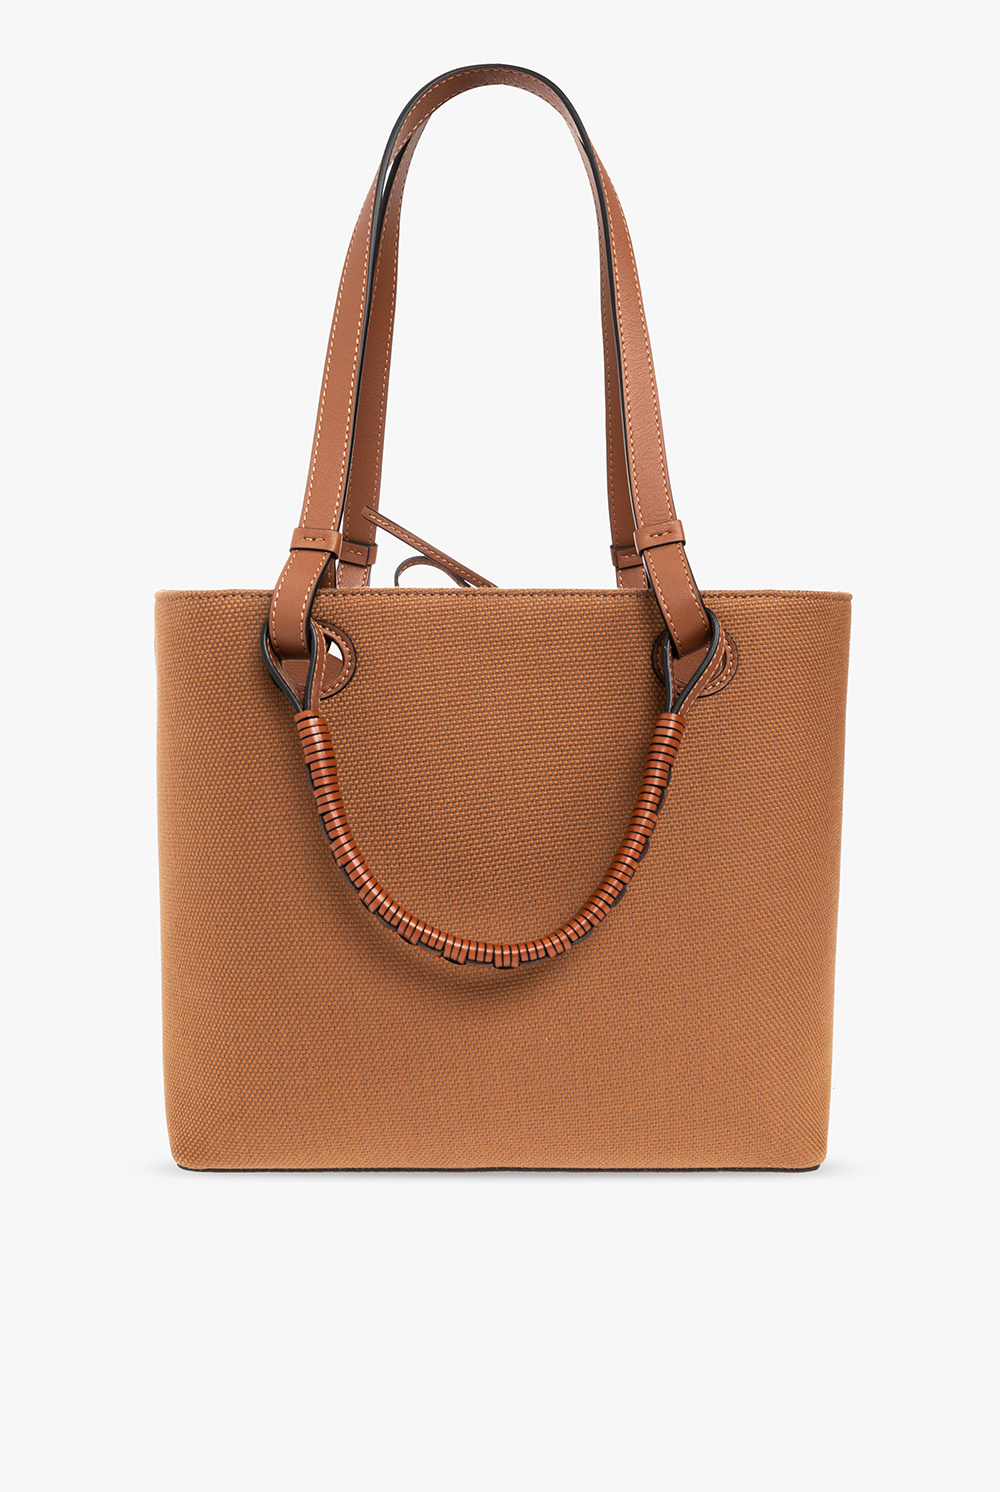 loewe oak ‘Anagram Small’ shopper bag